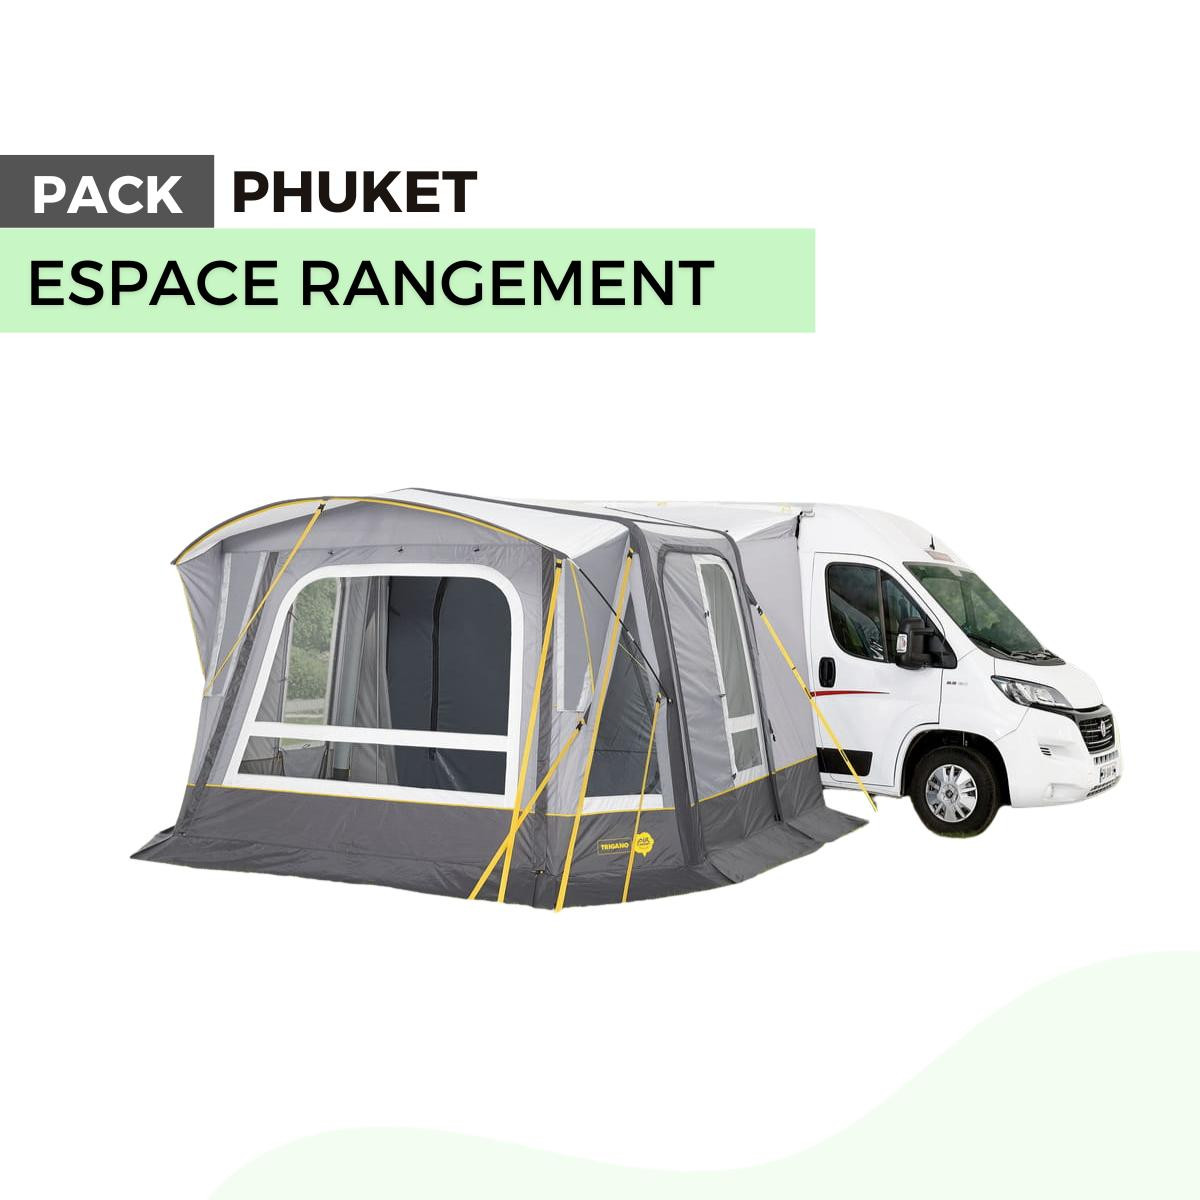 PACK auvent camping-car PHUKET : - 20 % sur l'annexe